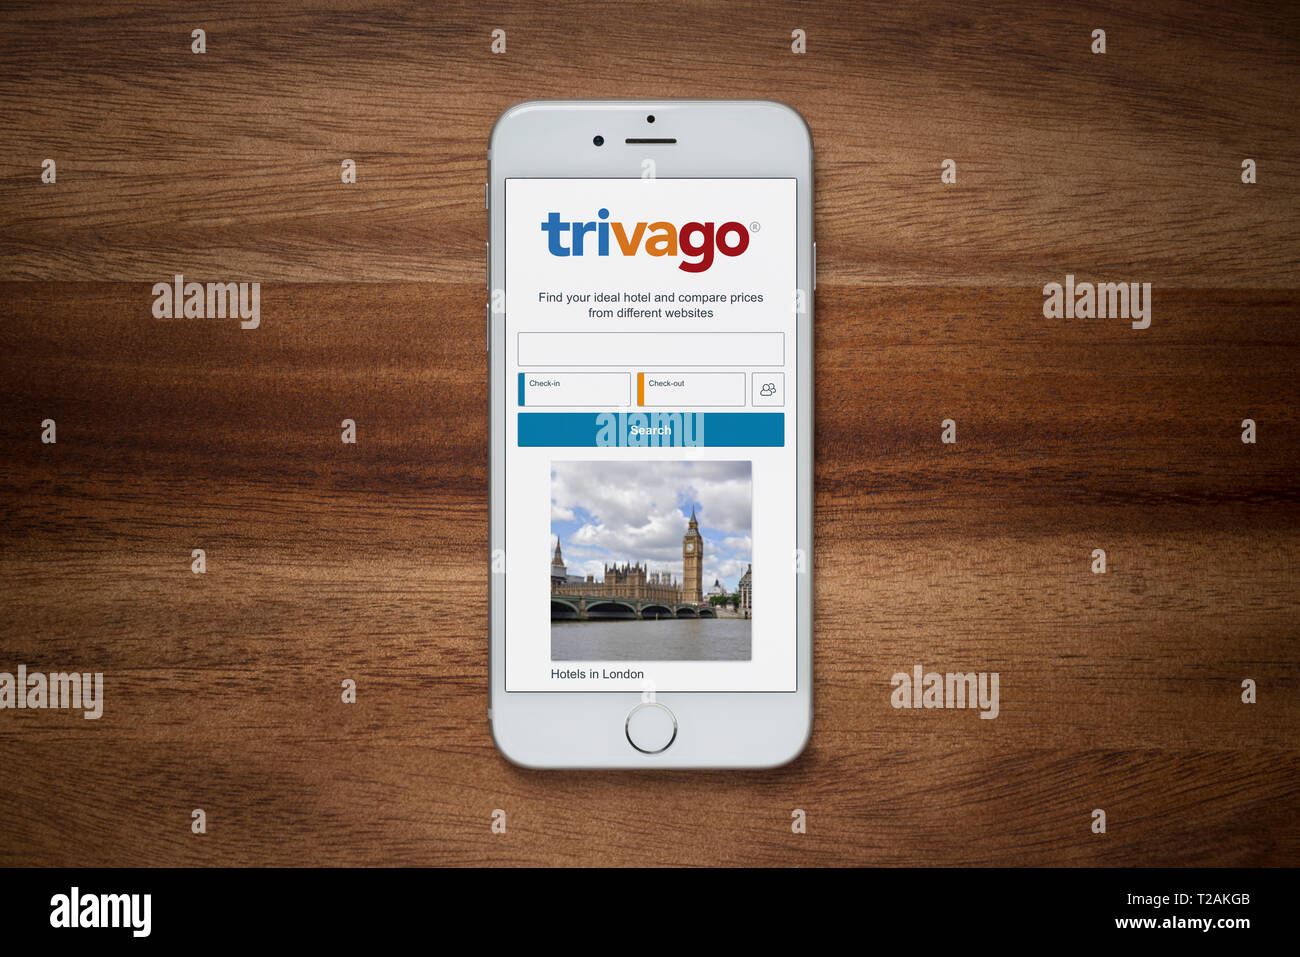 Un iPhone montrant le site Trivago repose sur une table en bois brut (usage éditorial uniquement). Banque D'Images